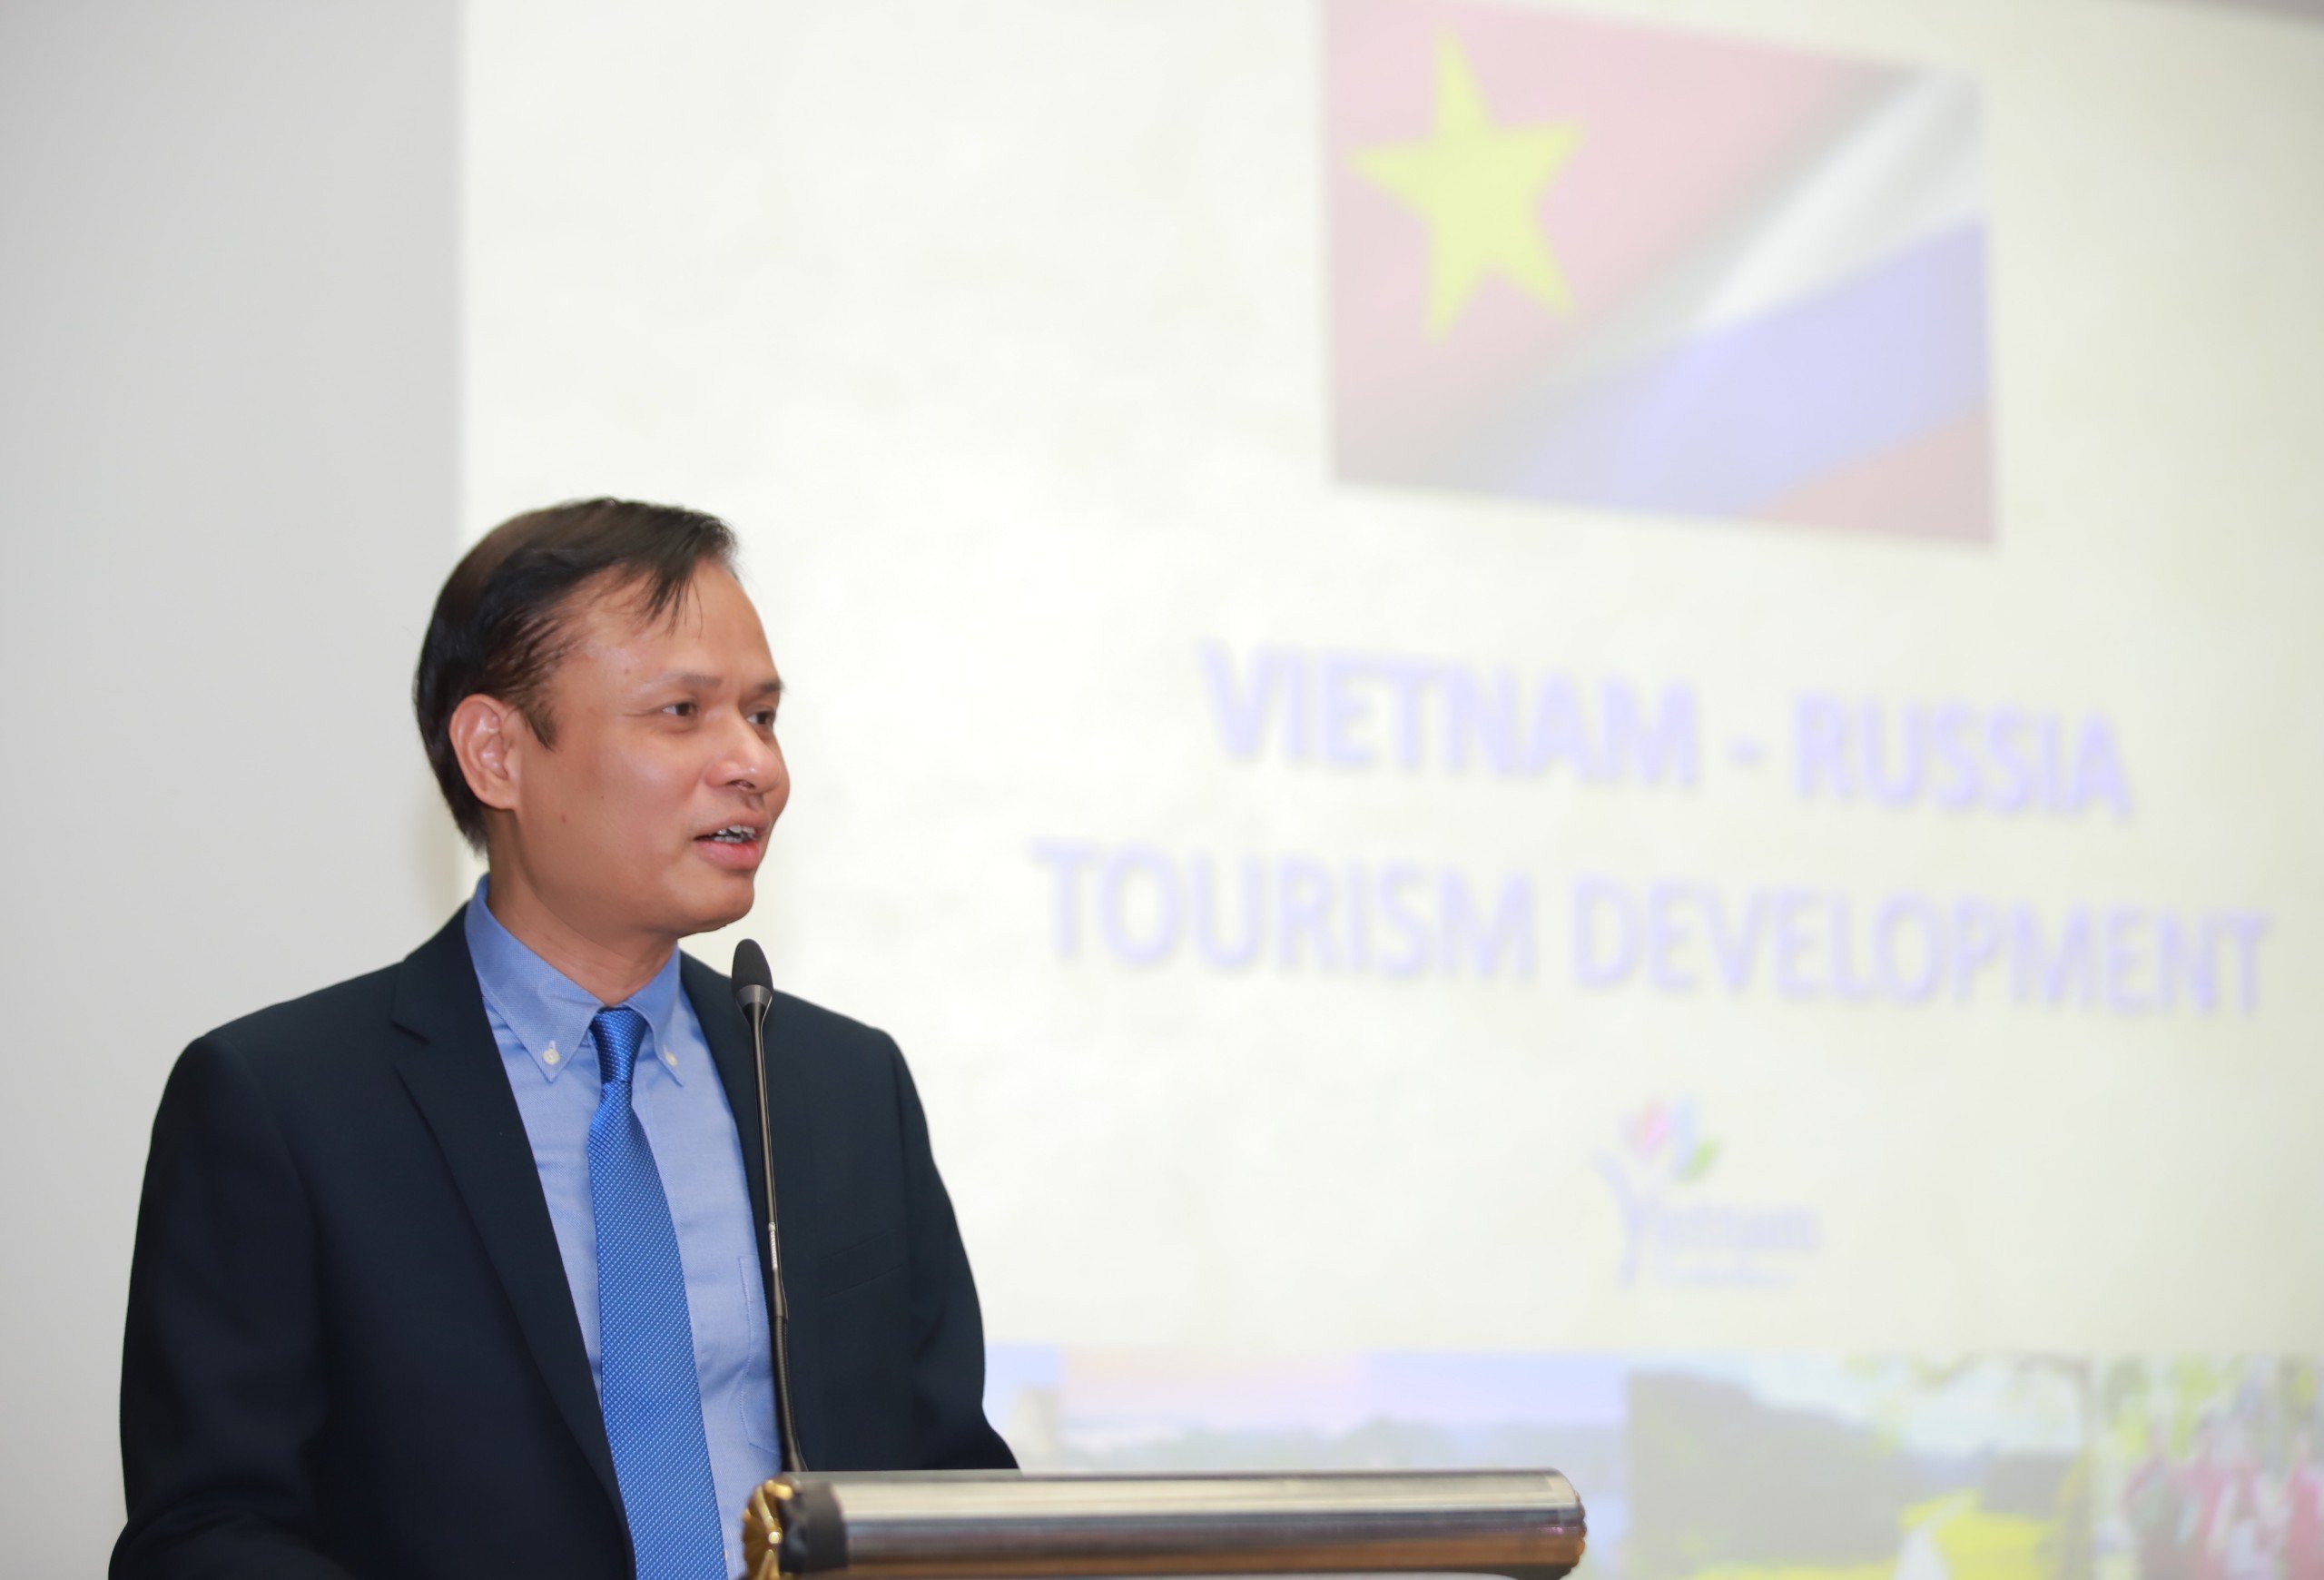 Đẩy hợp tác phát triển du lịch Việt Nam - Liên bang Nga  - Ảnh 4.